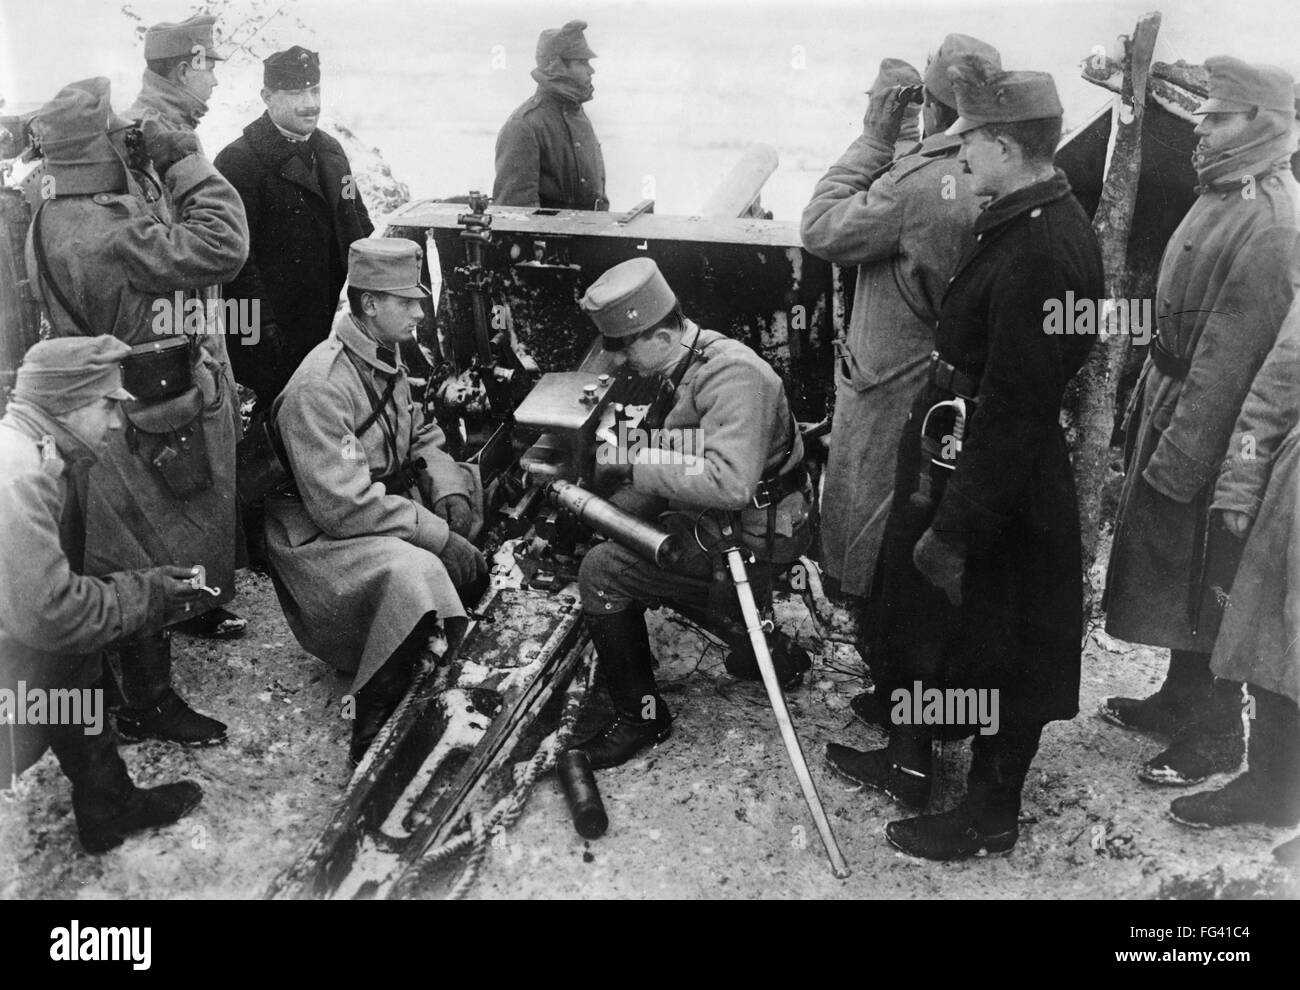 WWI: artillería, c1914. /NAustrian artilleros en Bukovina, Austria-Hungría. Fotografía, c1914. Foto de stock